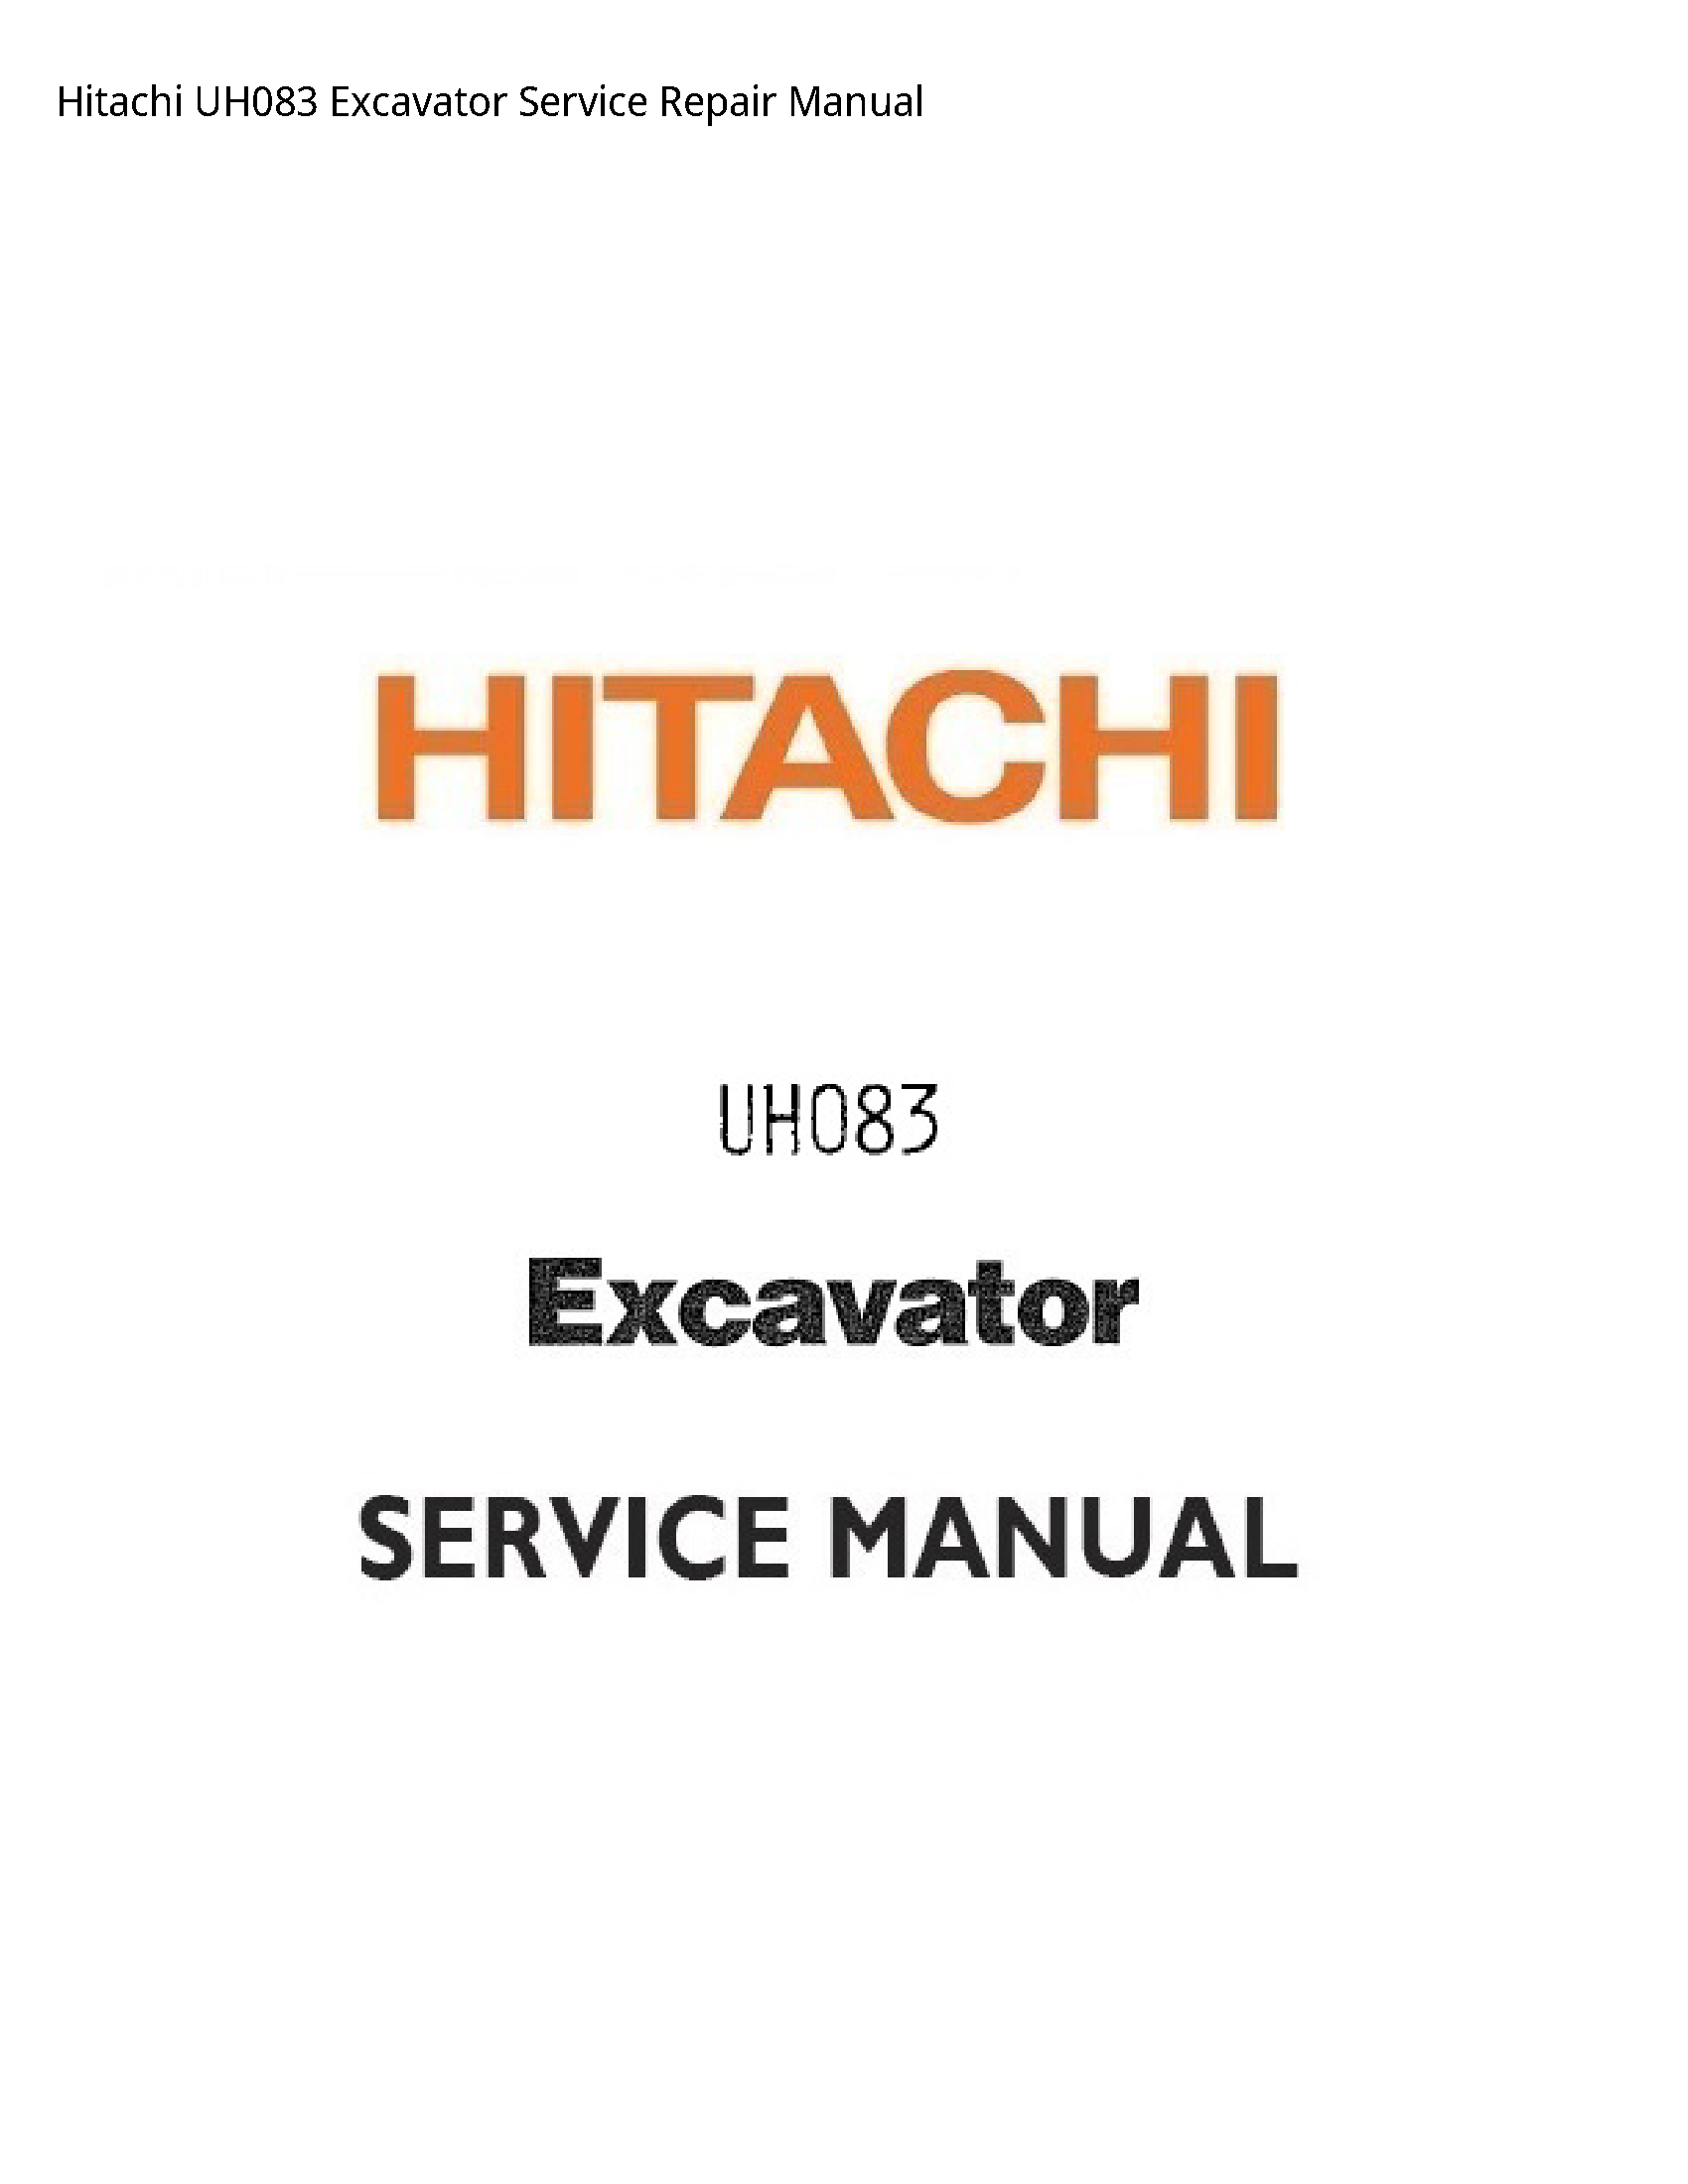 Hitachi UH083 Excavator manual